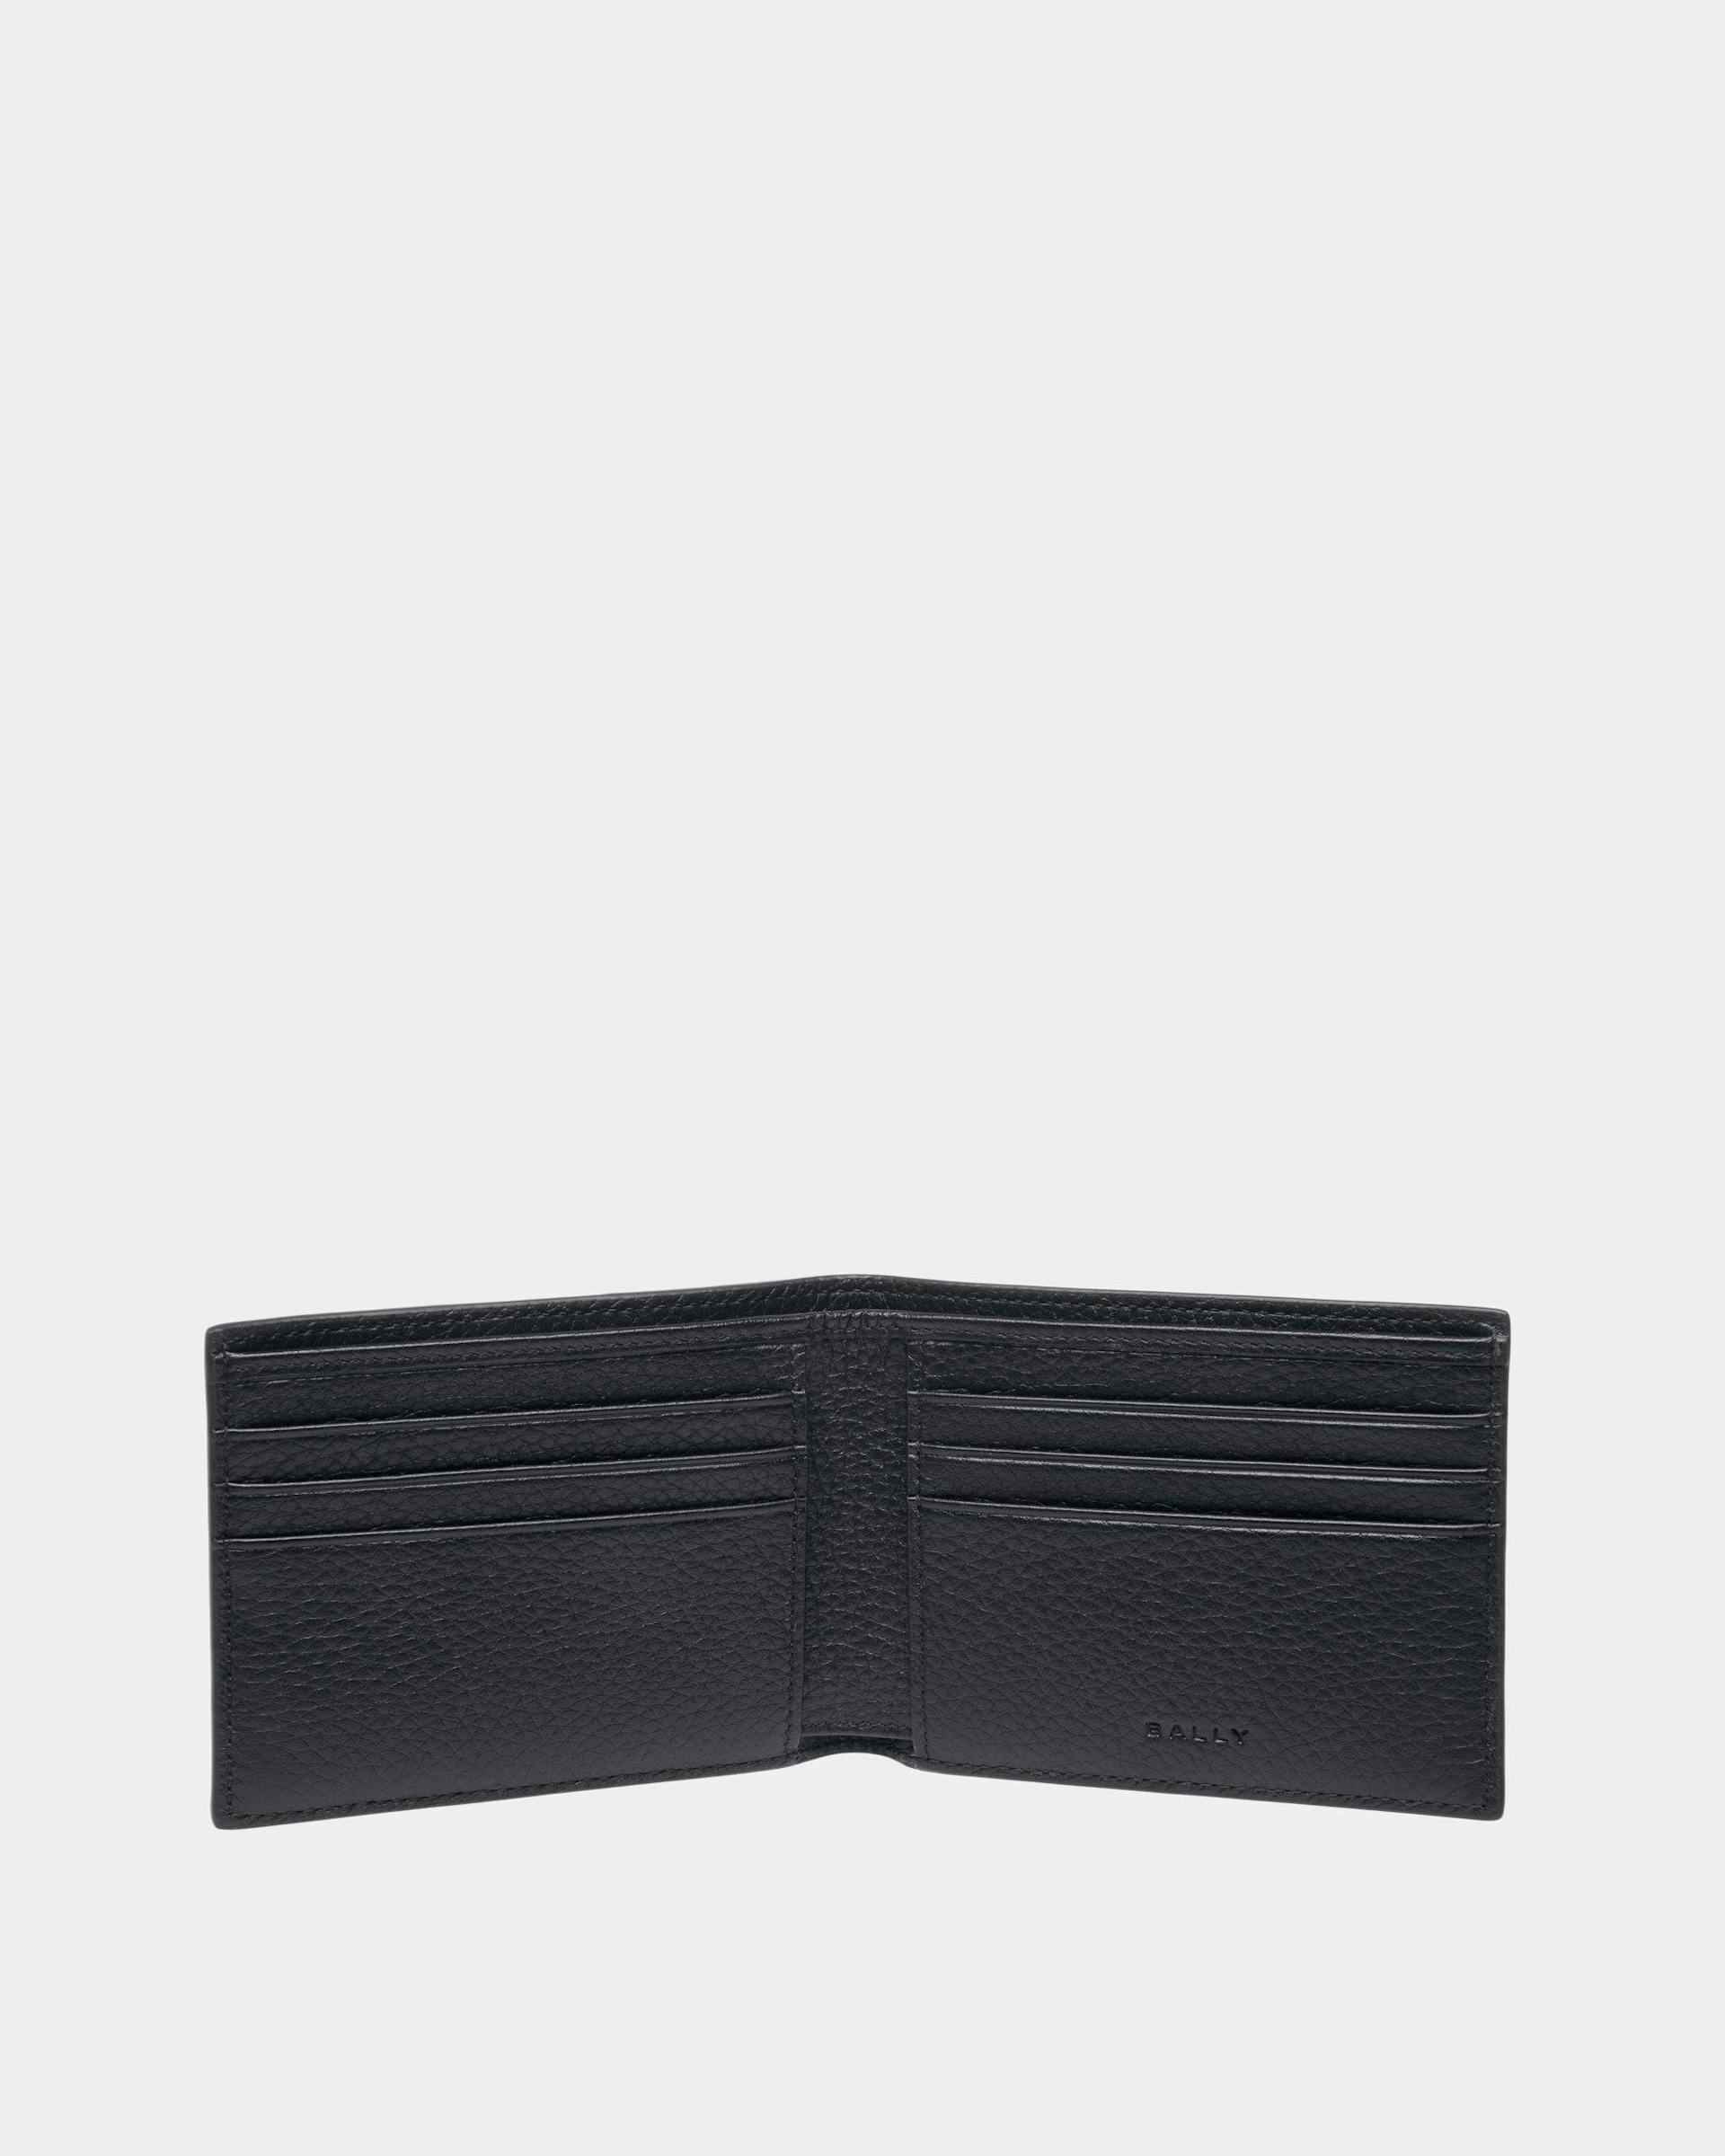 Men's Ribbon Wallet In Midnight Leather | Bally | Still Life Open / Inside